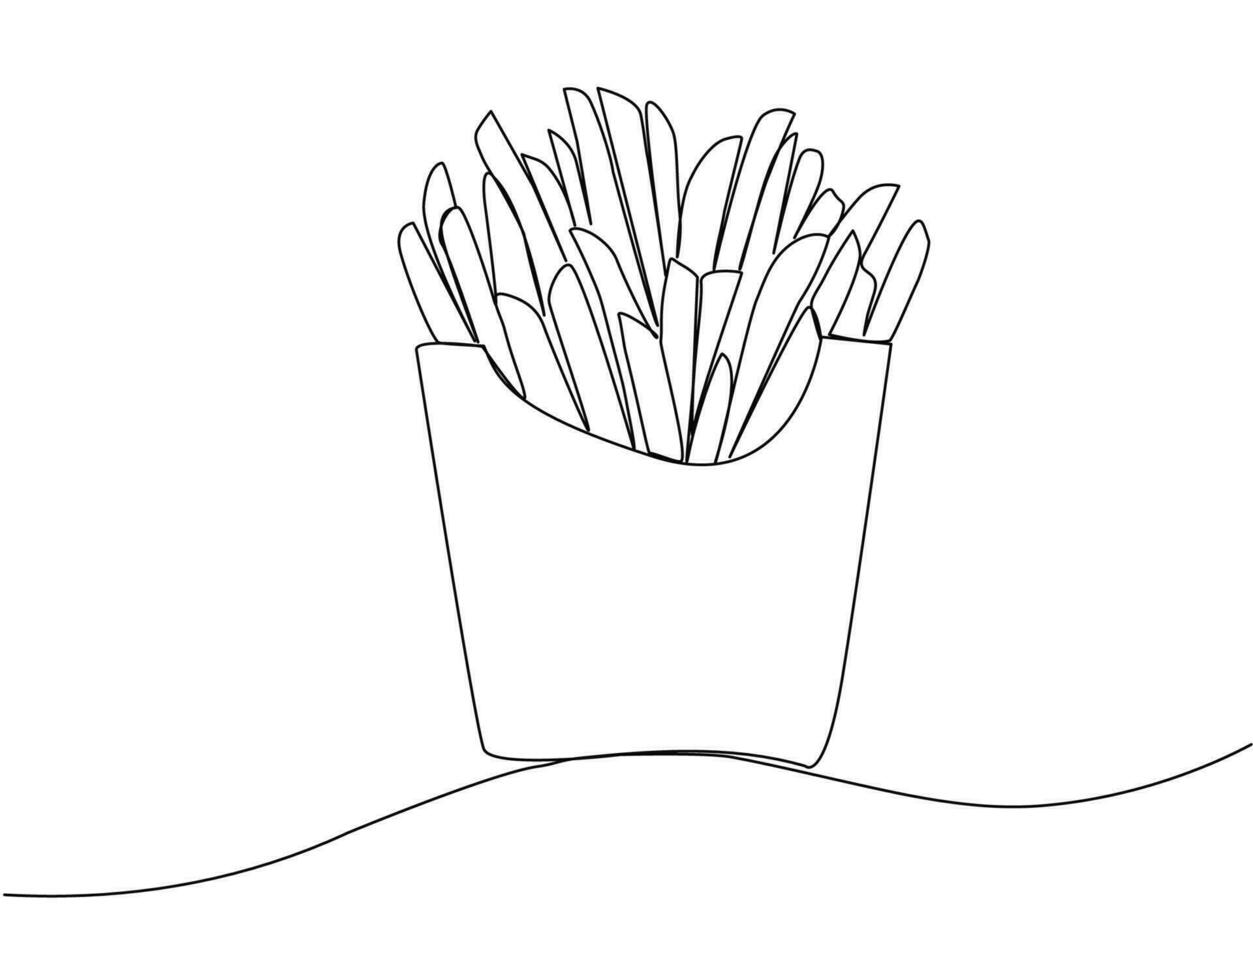 français frites dans continu ligne art. frit Patate des bâtons dans moderne Célibataire ligne dessin style. vecteur illustration.